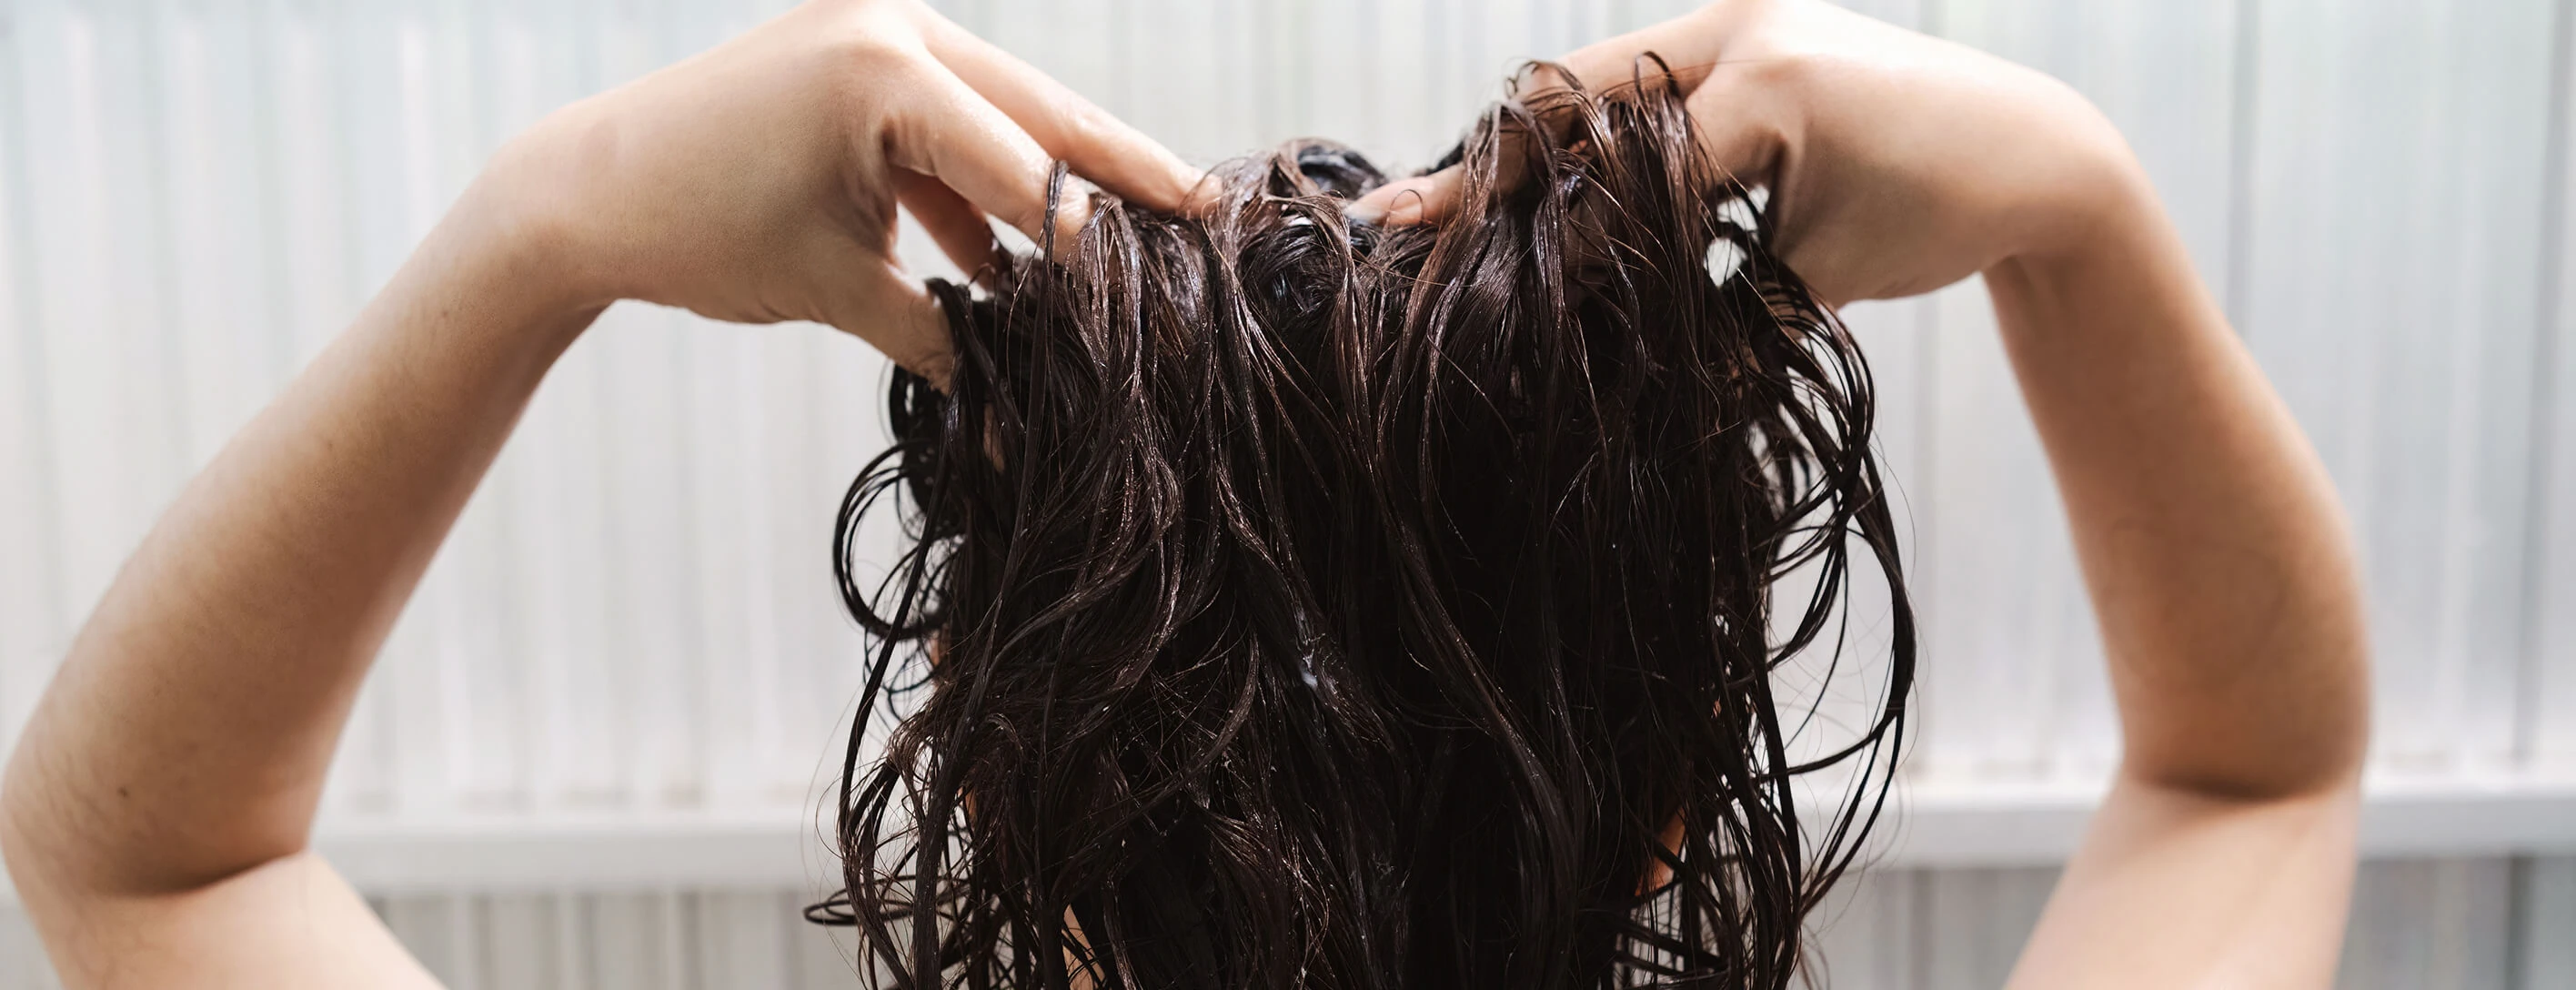 Восстановление густоты и объема волос в домашних условиях